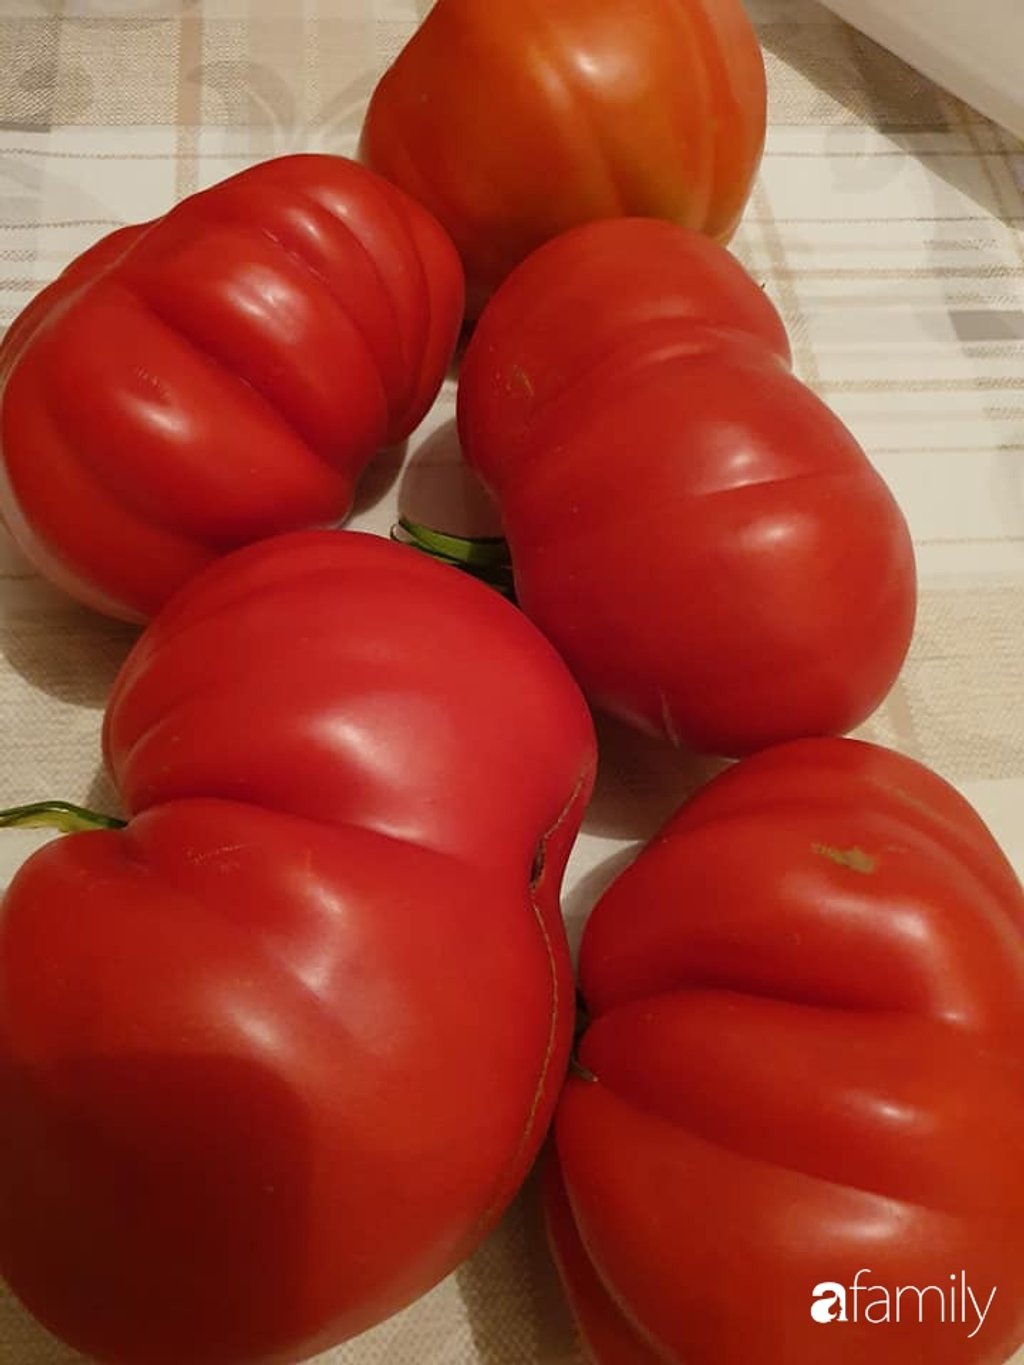 Năm nay anh Duy An trồng thêm cà chua gồm cà chua quả to (cà chua thịt) và vài cây cà chua bi.